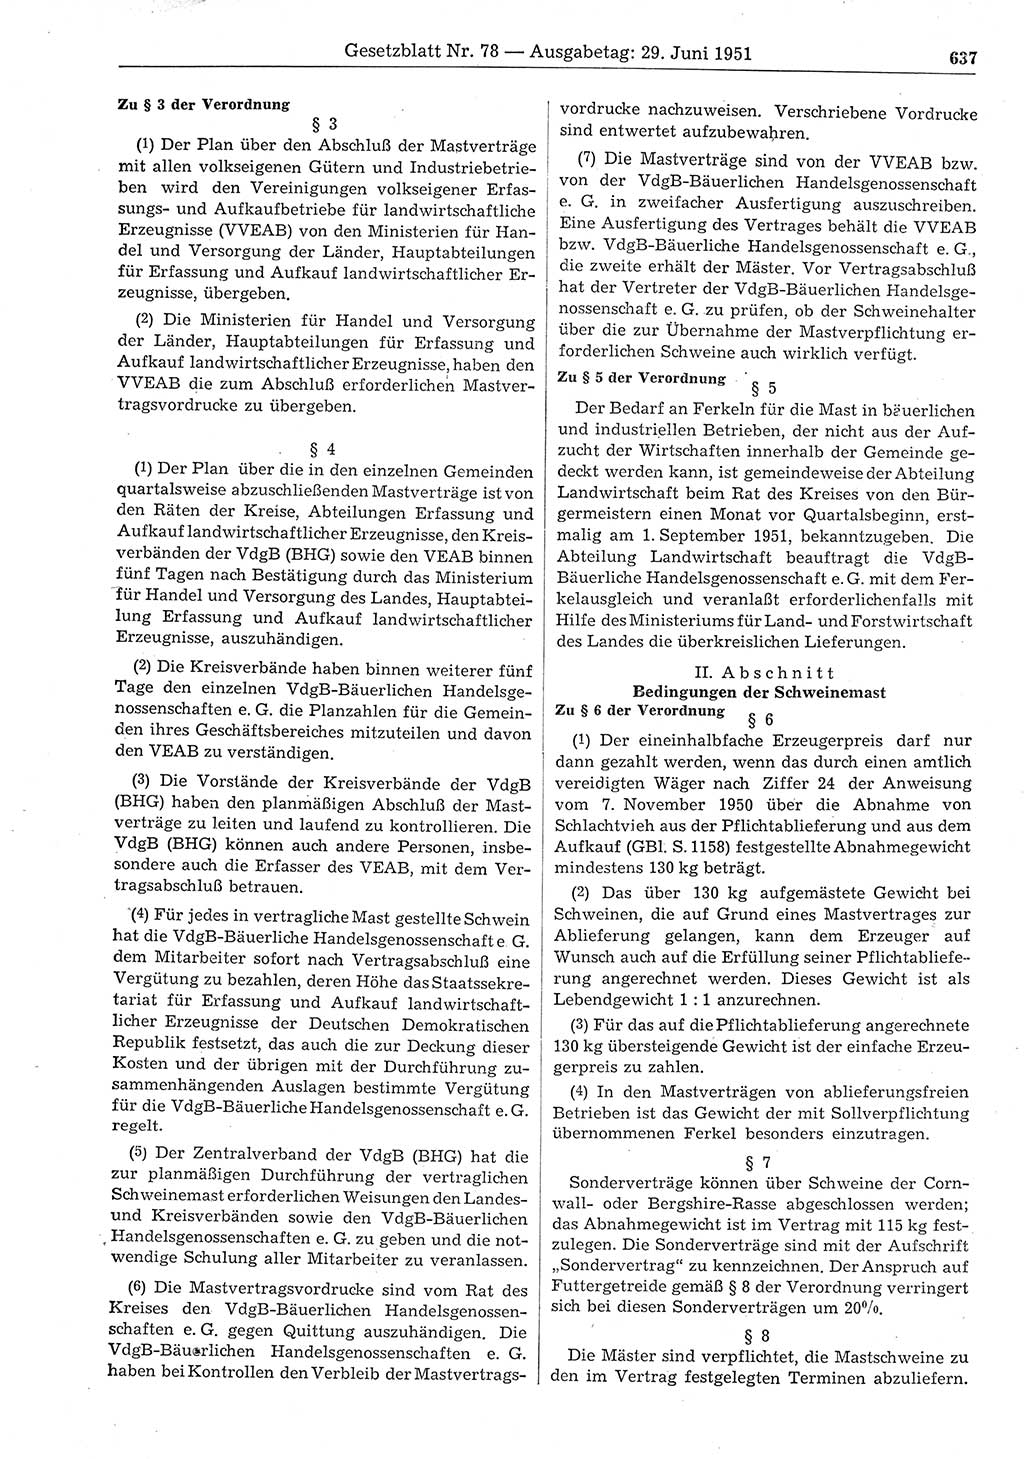 Gesetzblatt (GBl.) der Deutschen Demokratischen Republik (DDR) 1951, Seite 637 (GBl. DDR 1951, S. 637)